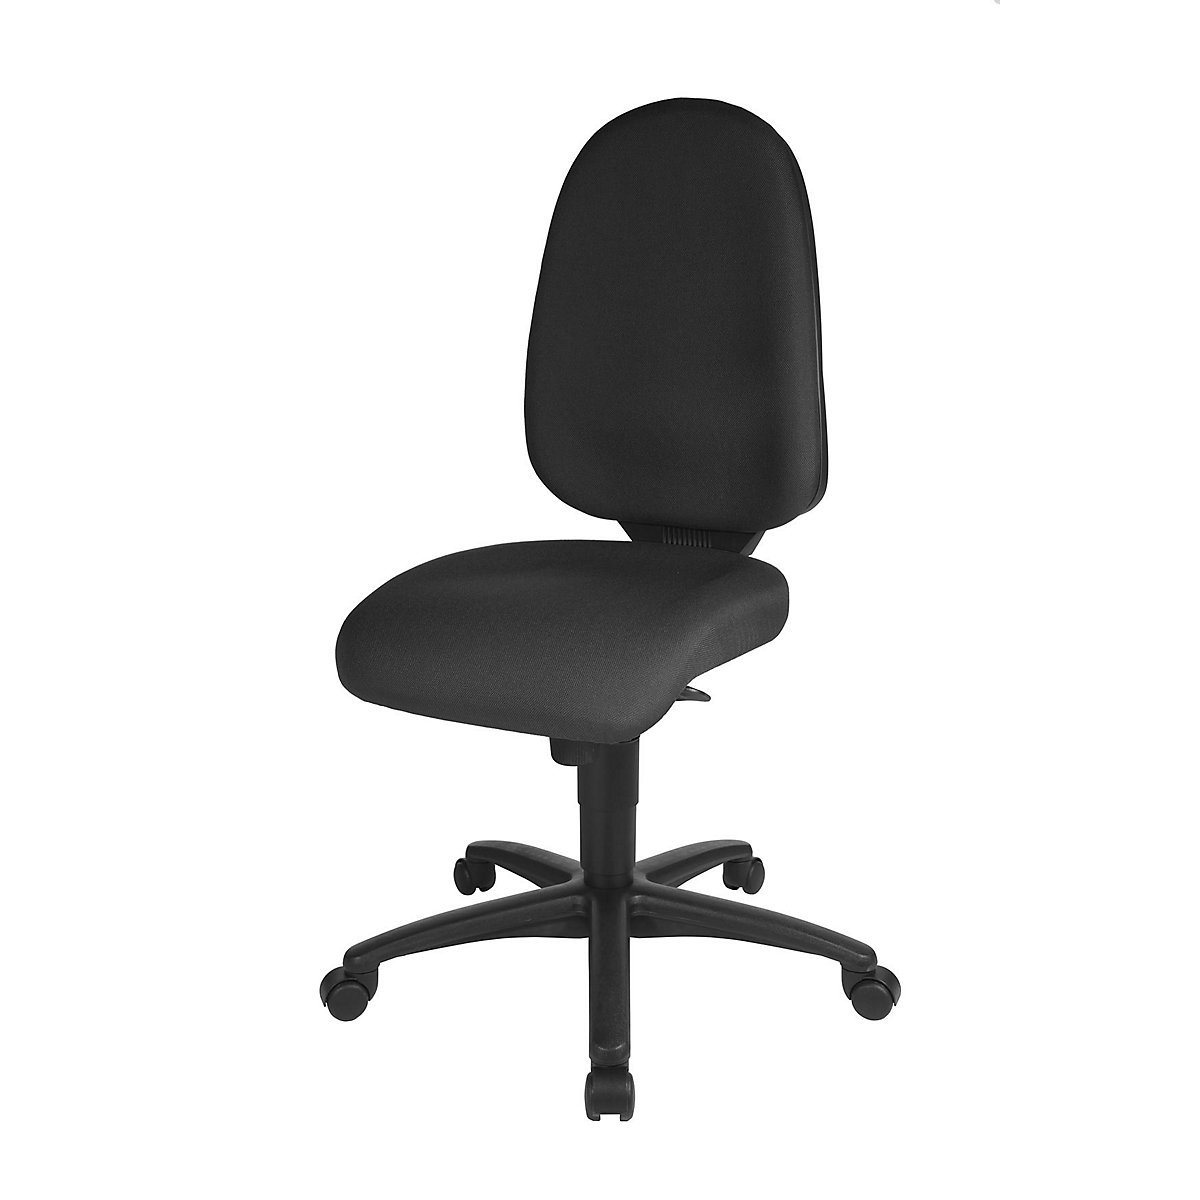 Otočná židle pro meziobratlové ploténky, synchronní mechanika, sedák pro meziobratlové ploténky – Topstar, výška opěradla 550 mm, potah černý-17